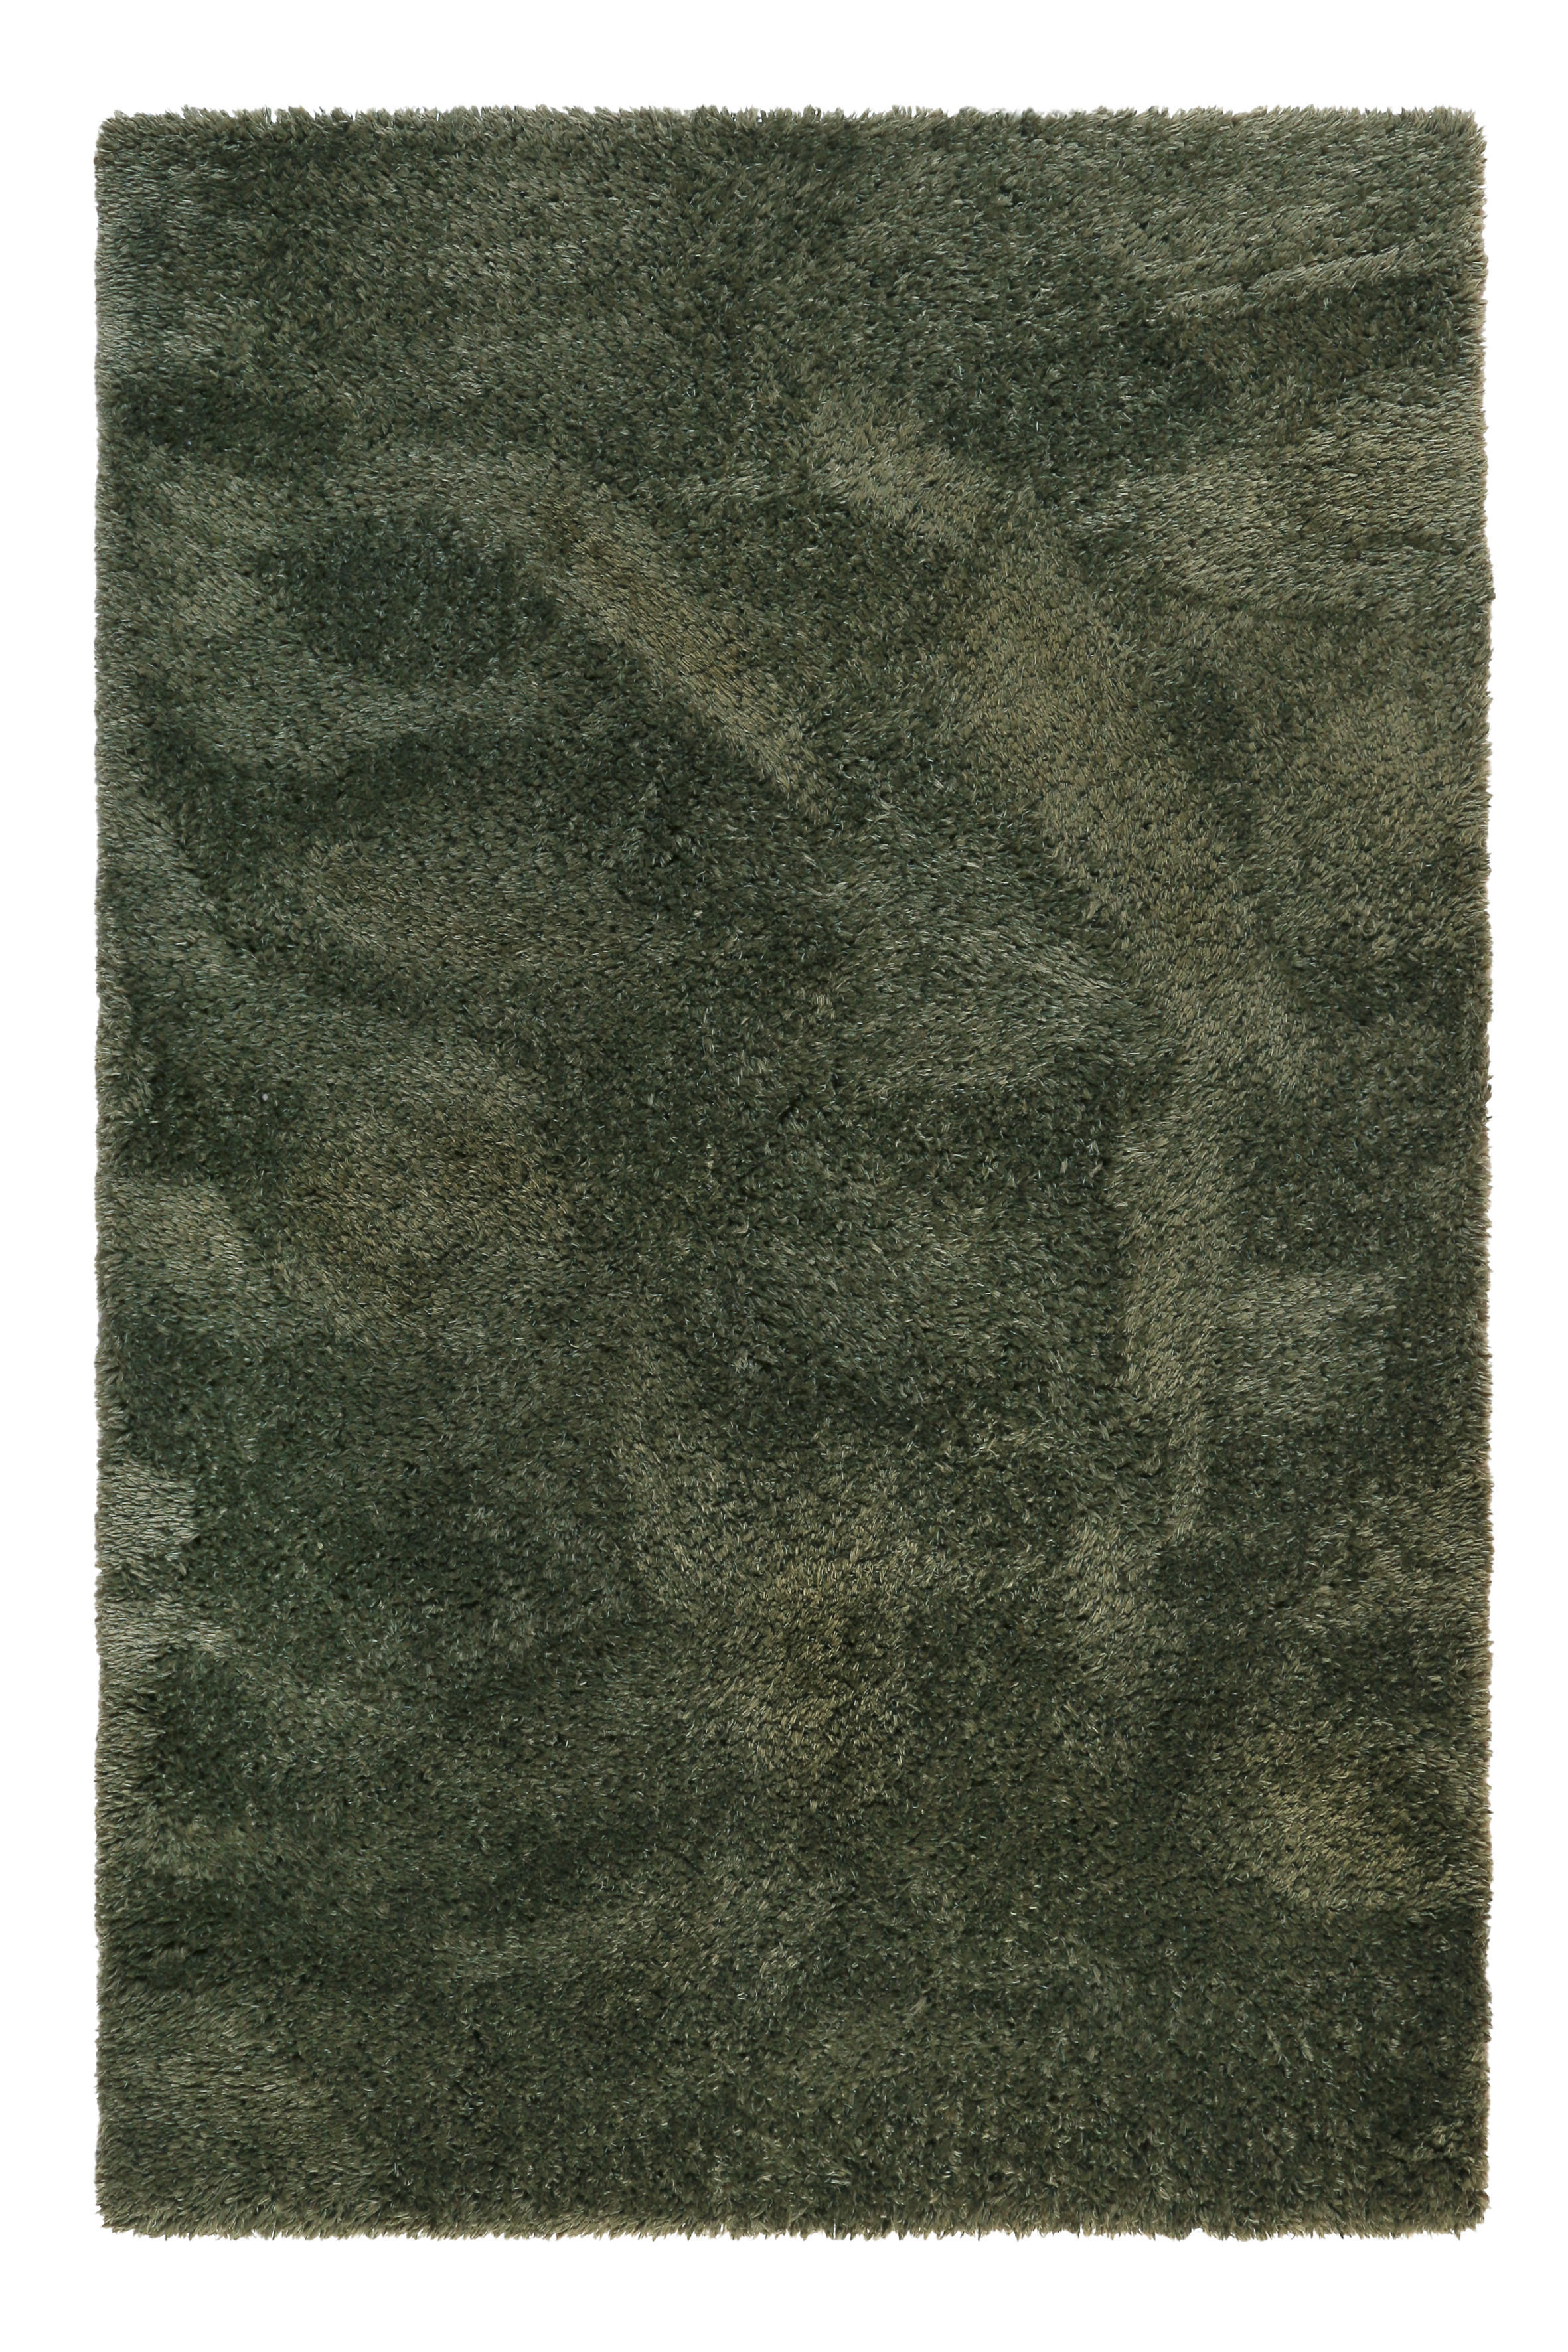 Esprit KOBEREC S VYSOKÝM VLASEM, 160/225 cm, olivově zelená - olivově zelená - textil